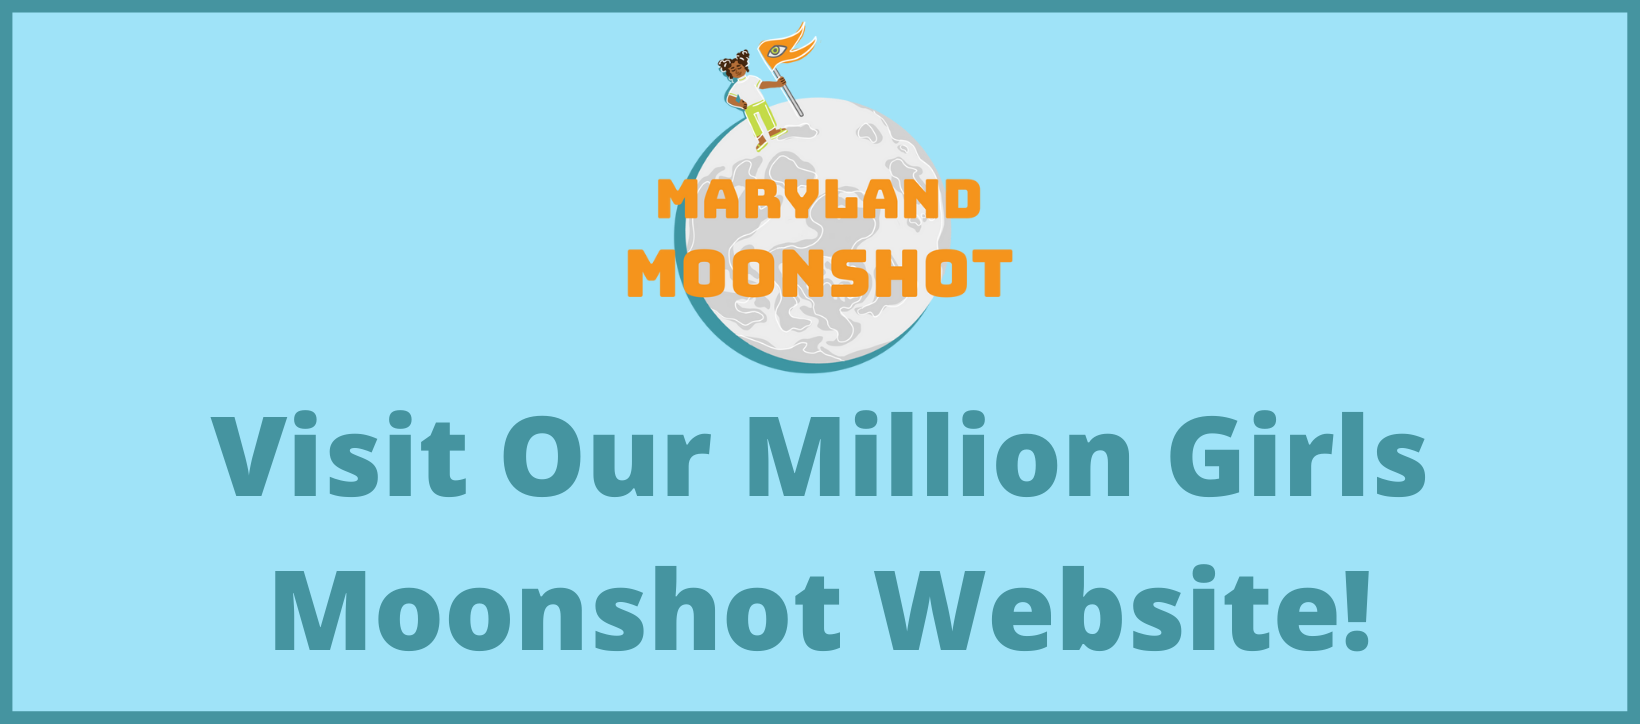 Visit Our Million Girls Moonshot Website